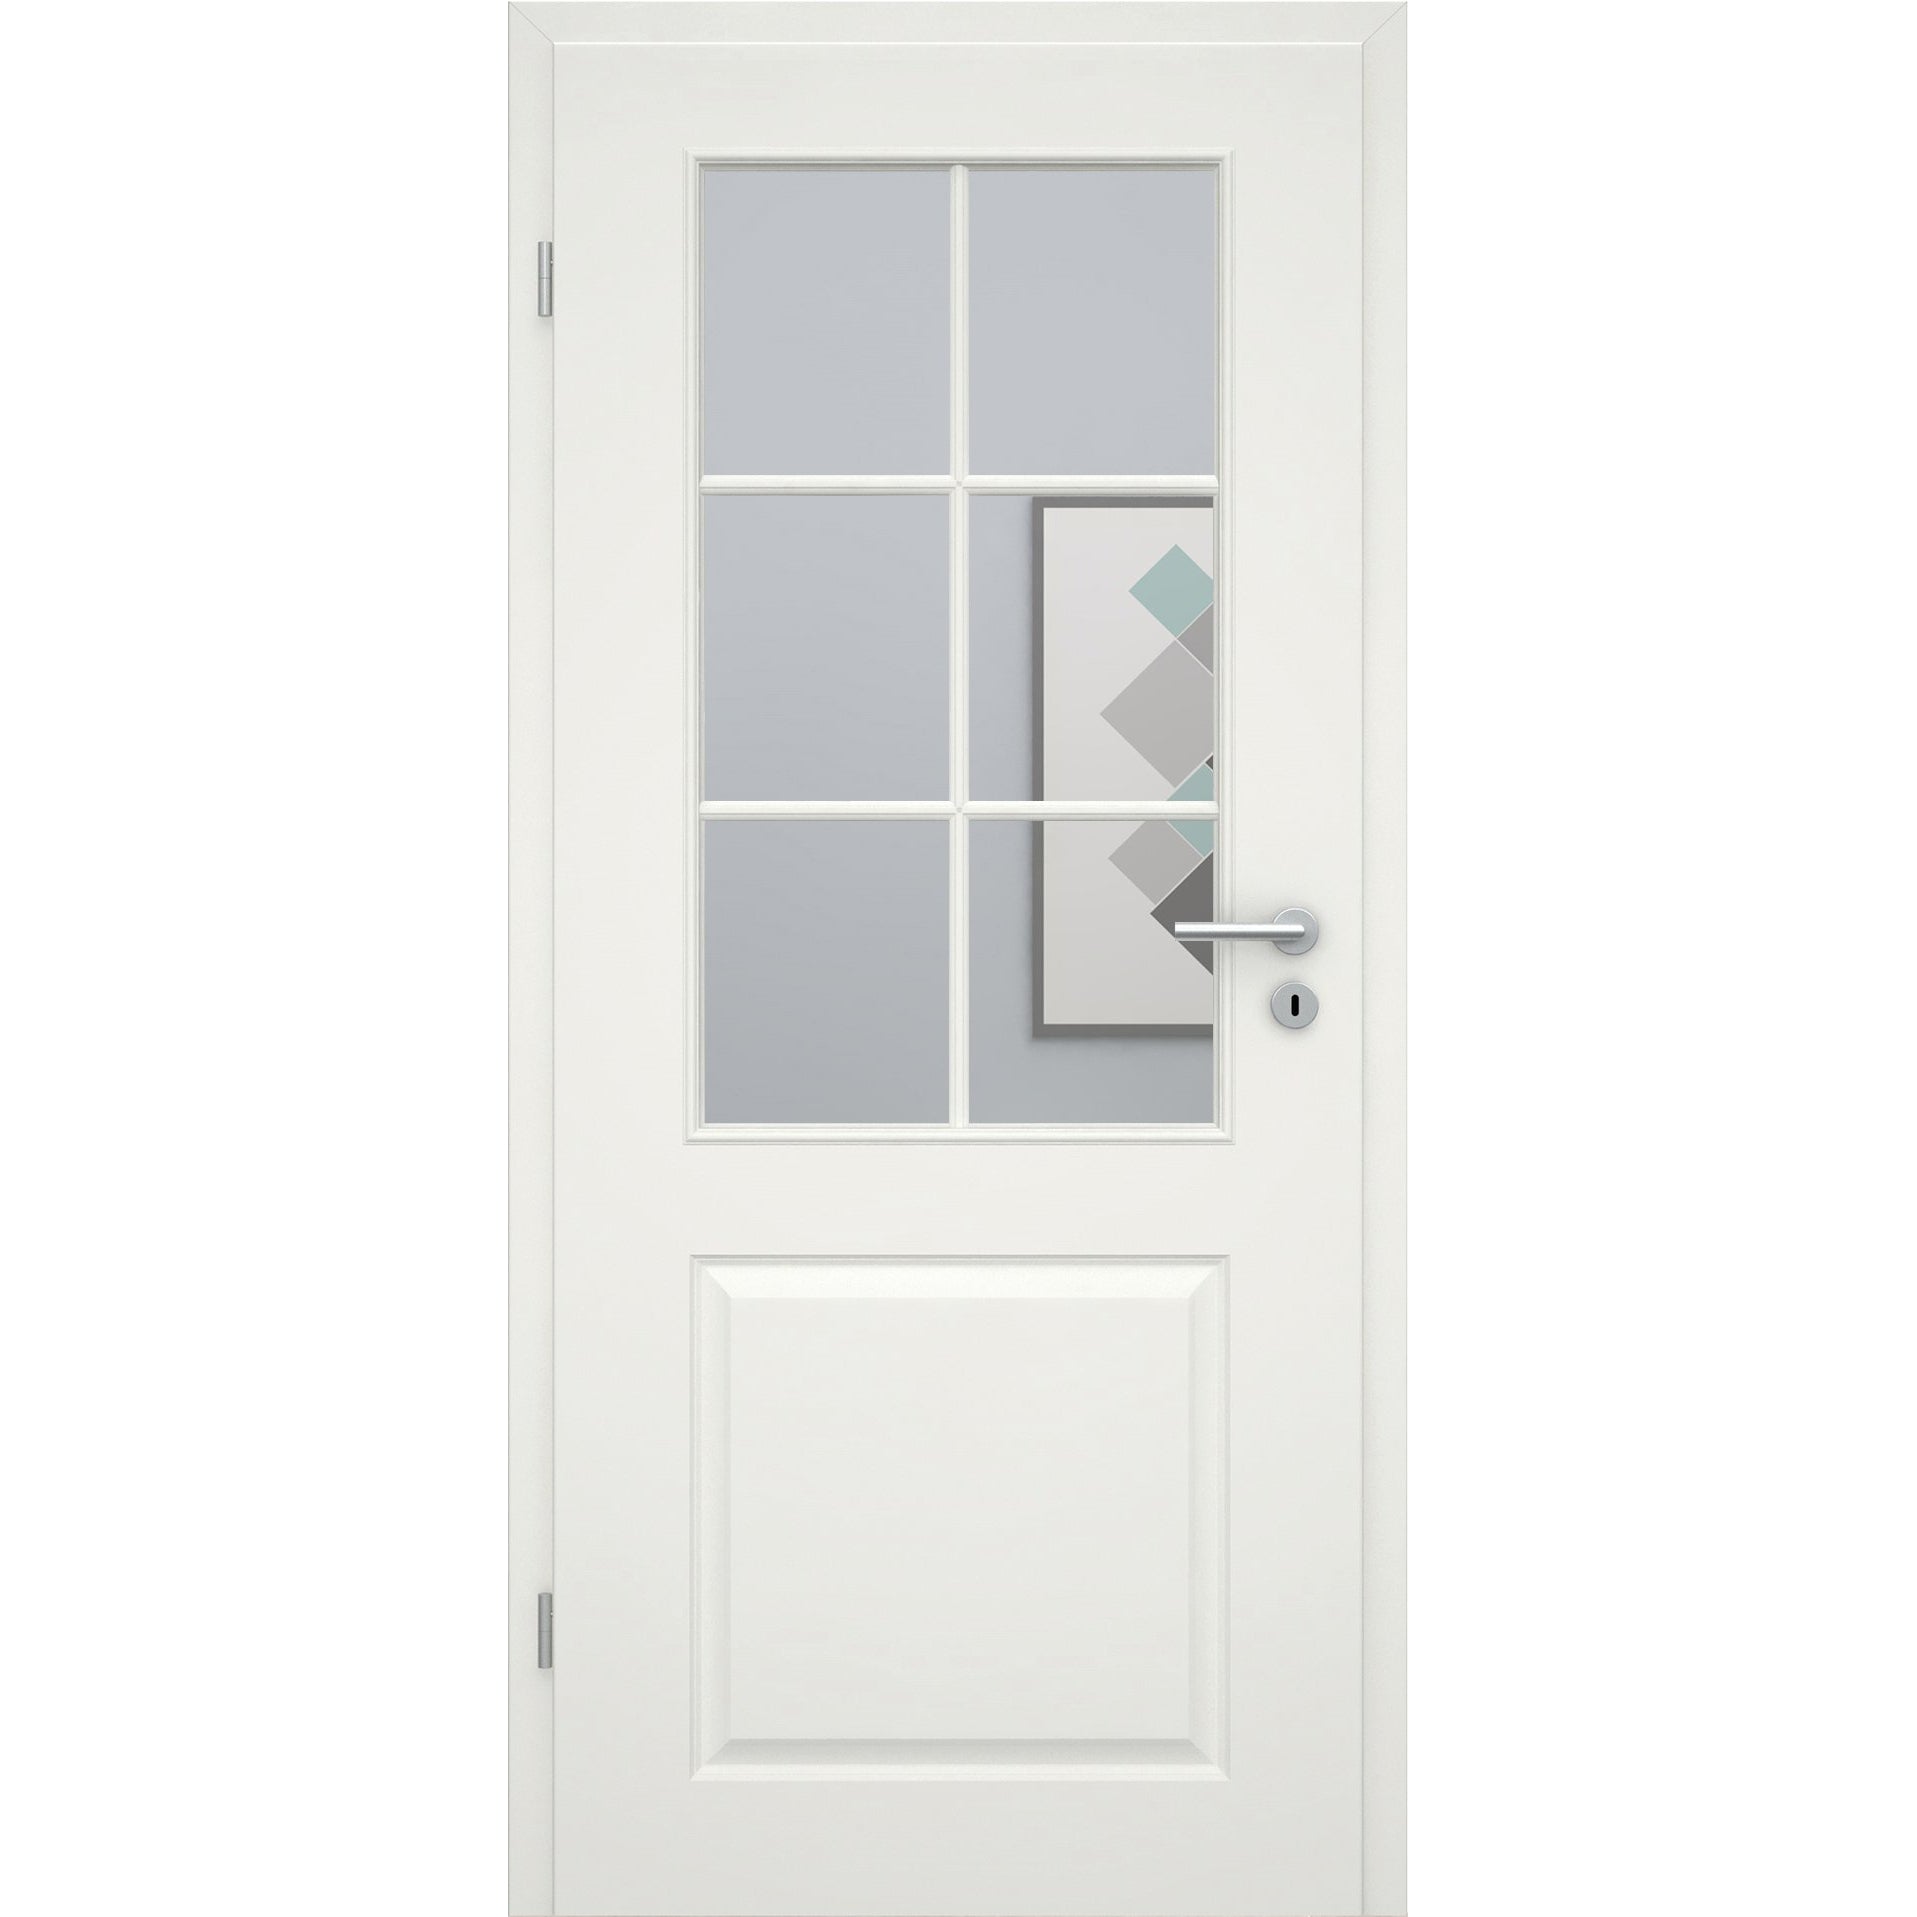 Zimmertür mit Lichtausschnitt mit Sprossenrahmen standard soft-weiß 2 Kassetten Eckkante - Modell Stiltür K21LASPS